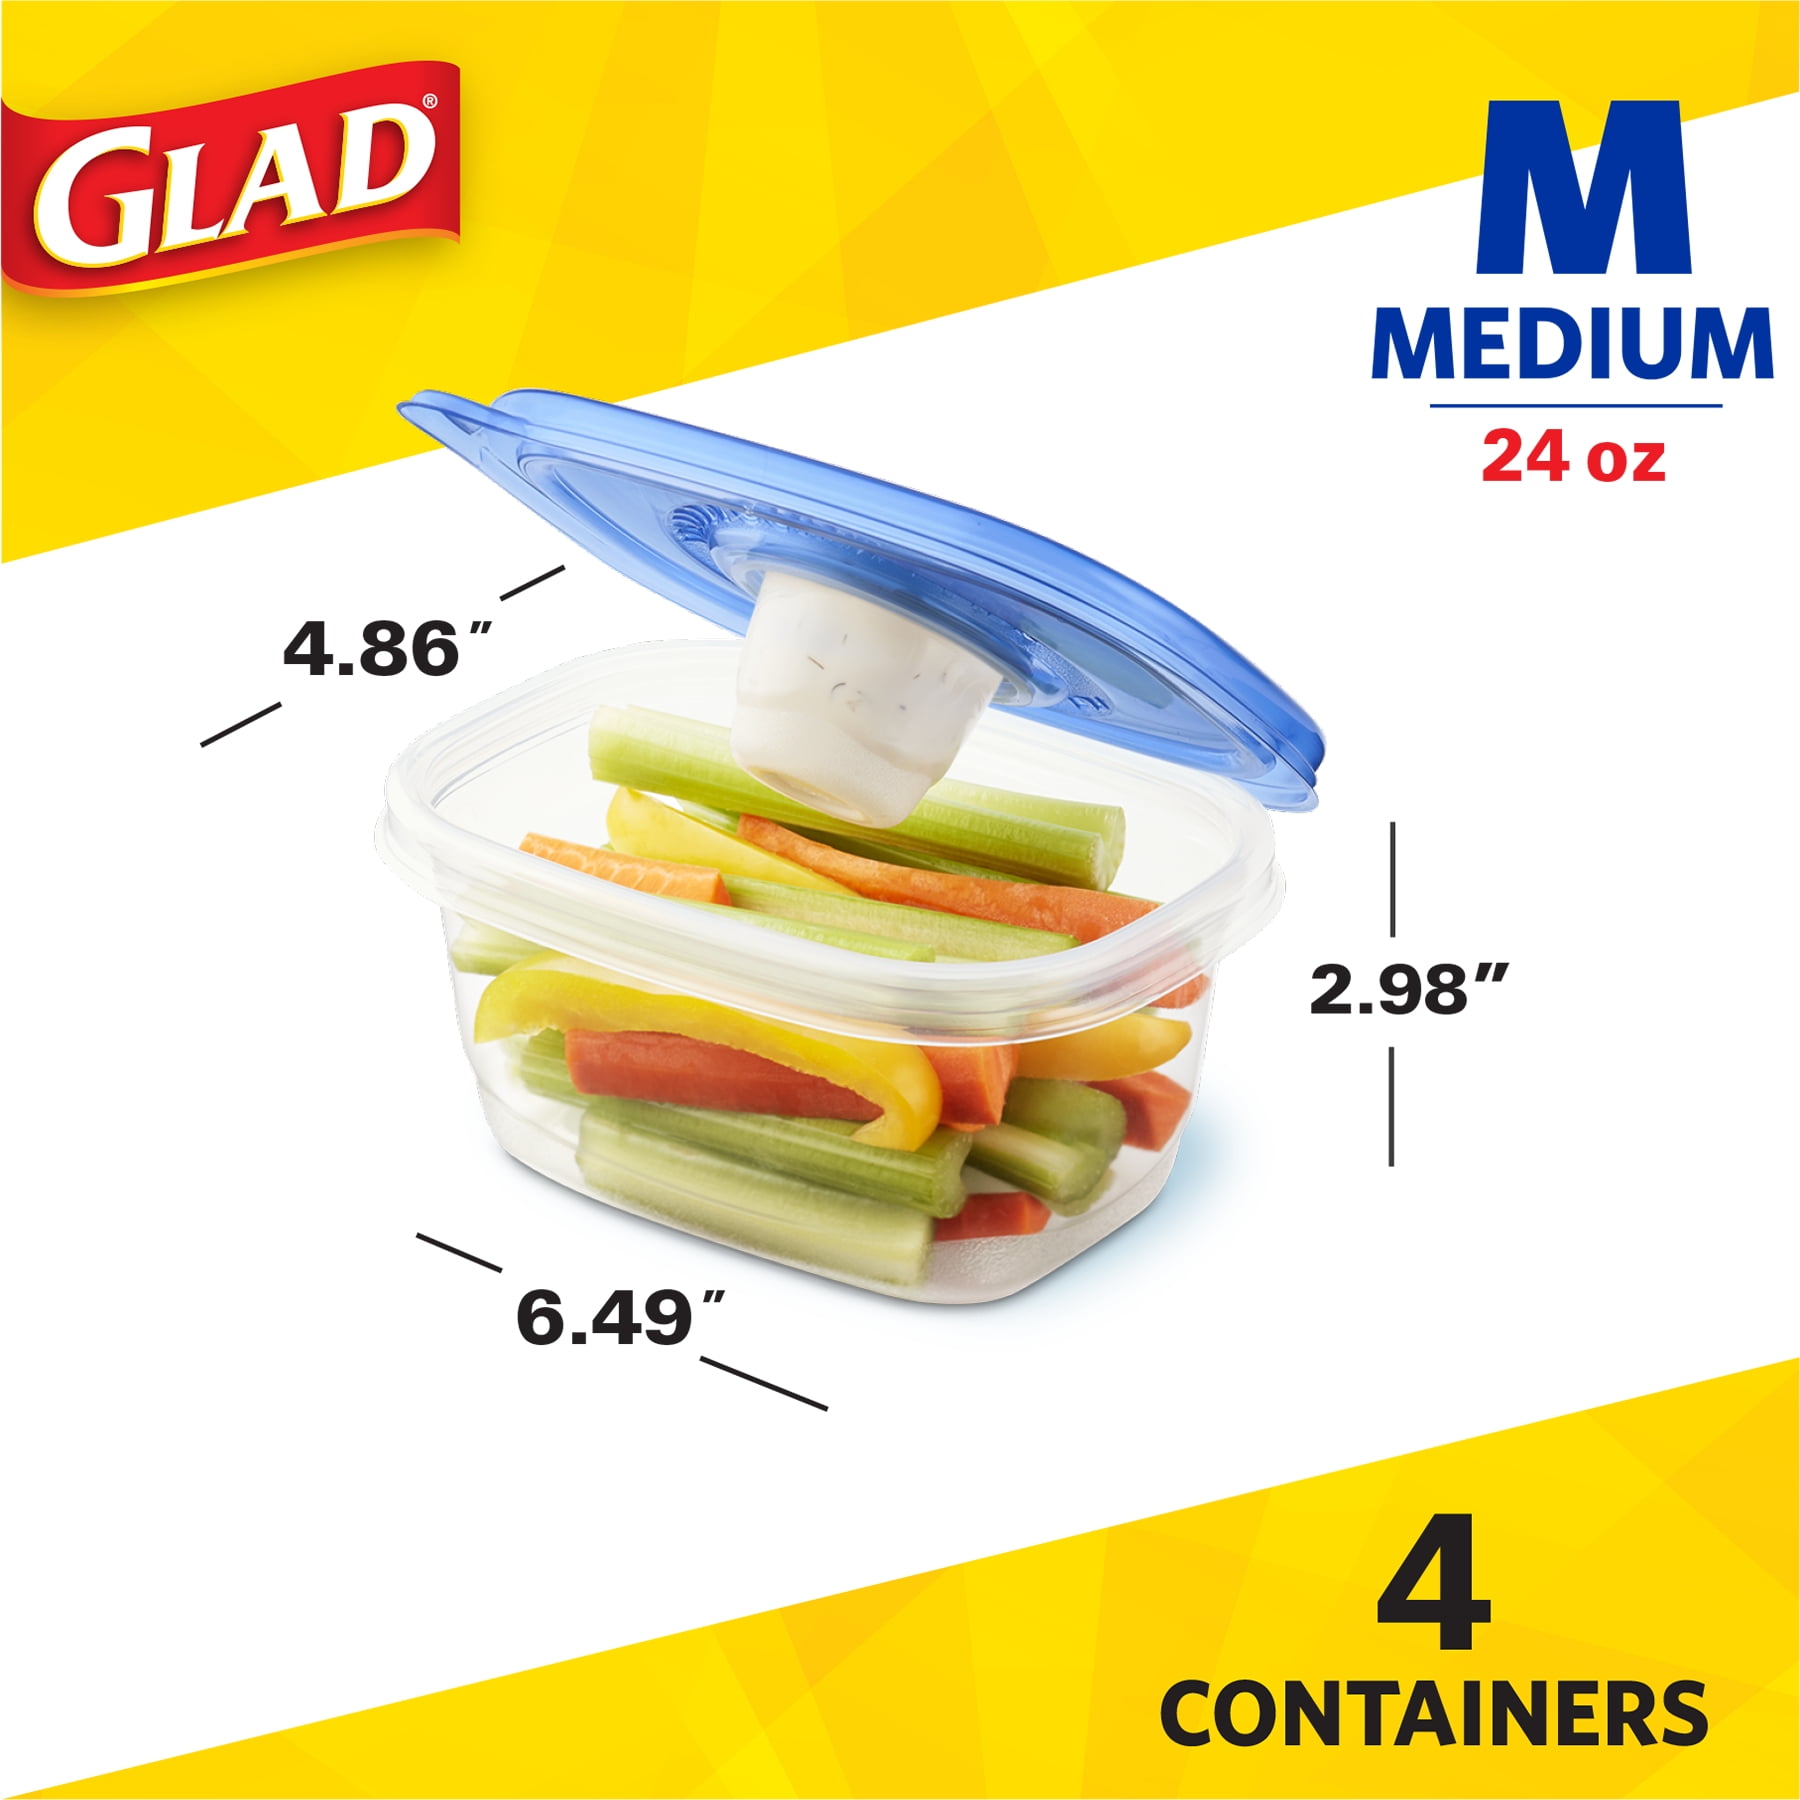 Glad Entrée Containers with Lids - 5 pk, 25 oz - Food 4 Less